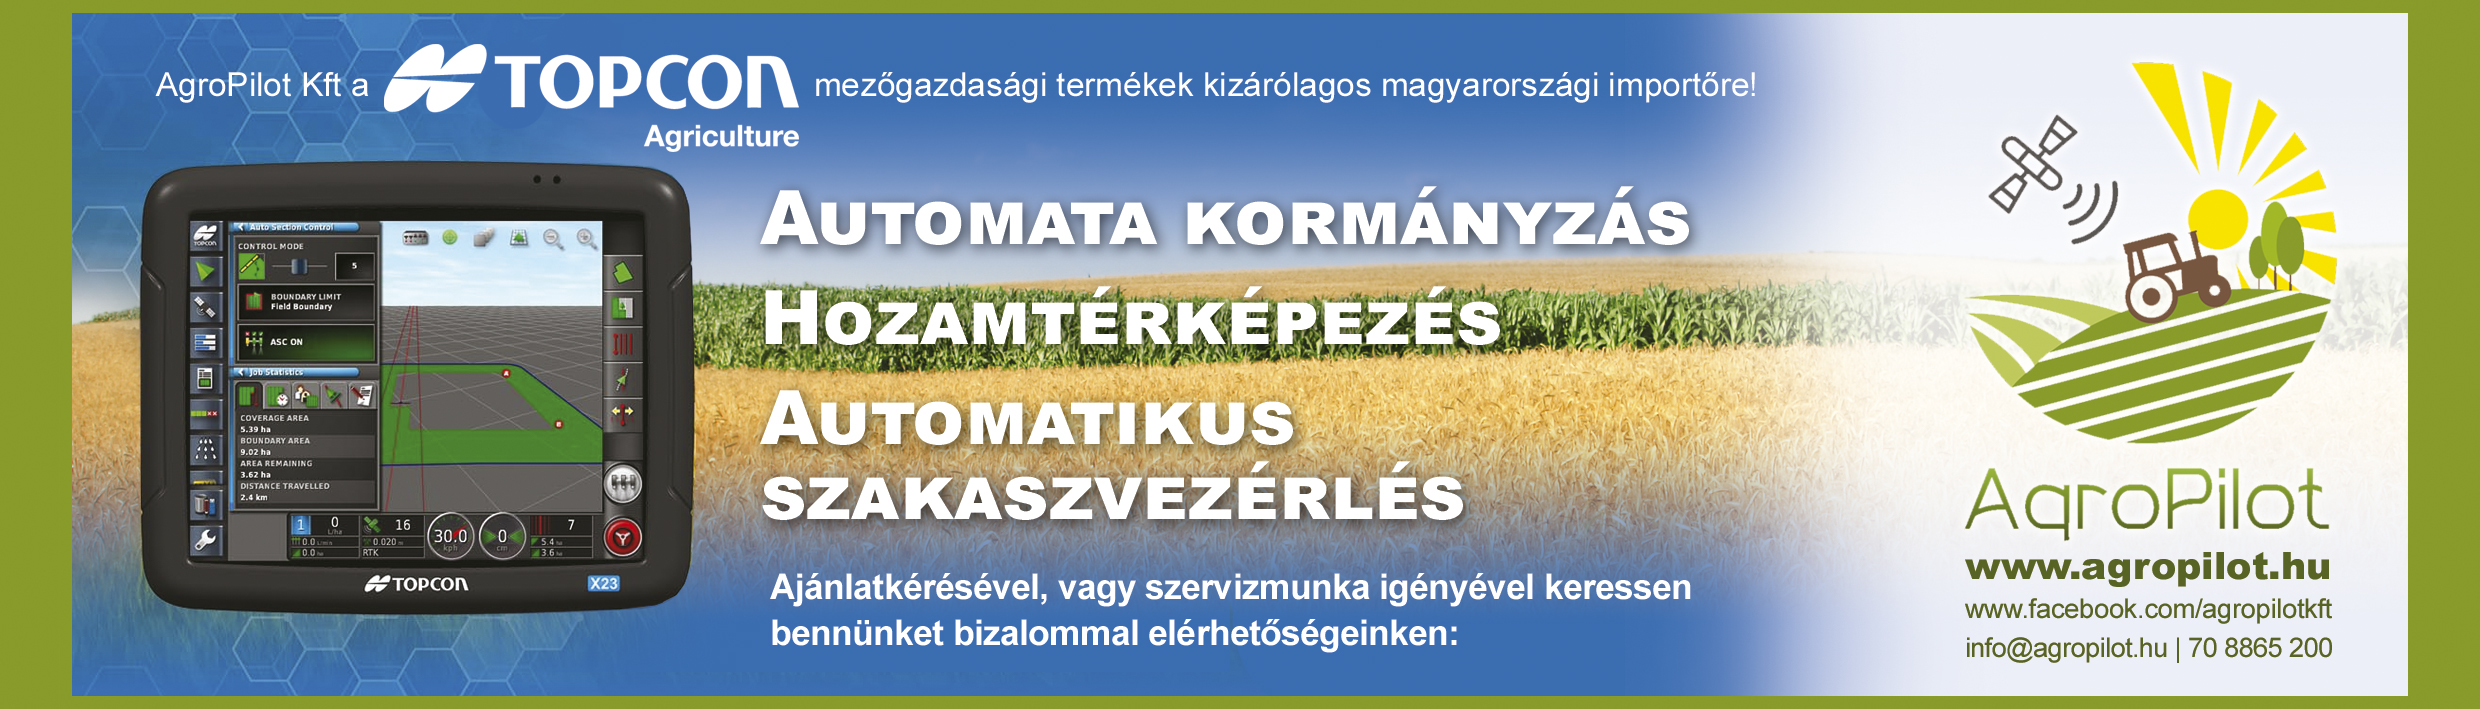 AgroPilot Kft. a Topcon mezőgazdasági termékek kizárólagos magyarországi importőre!